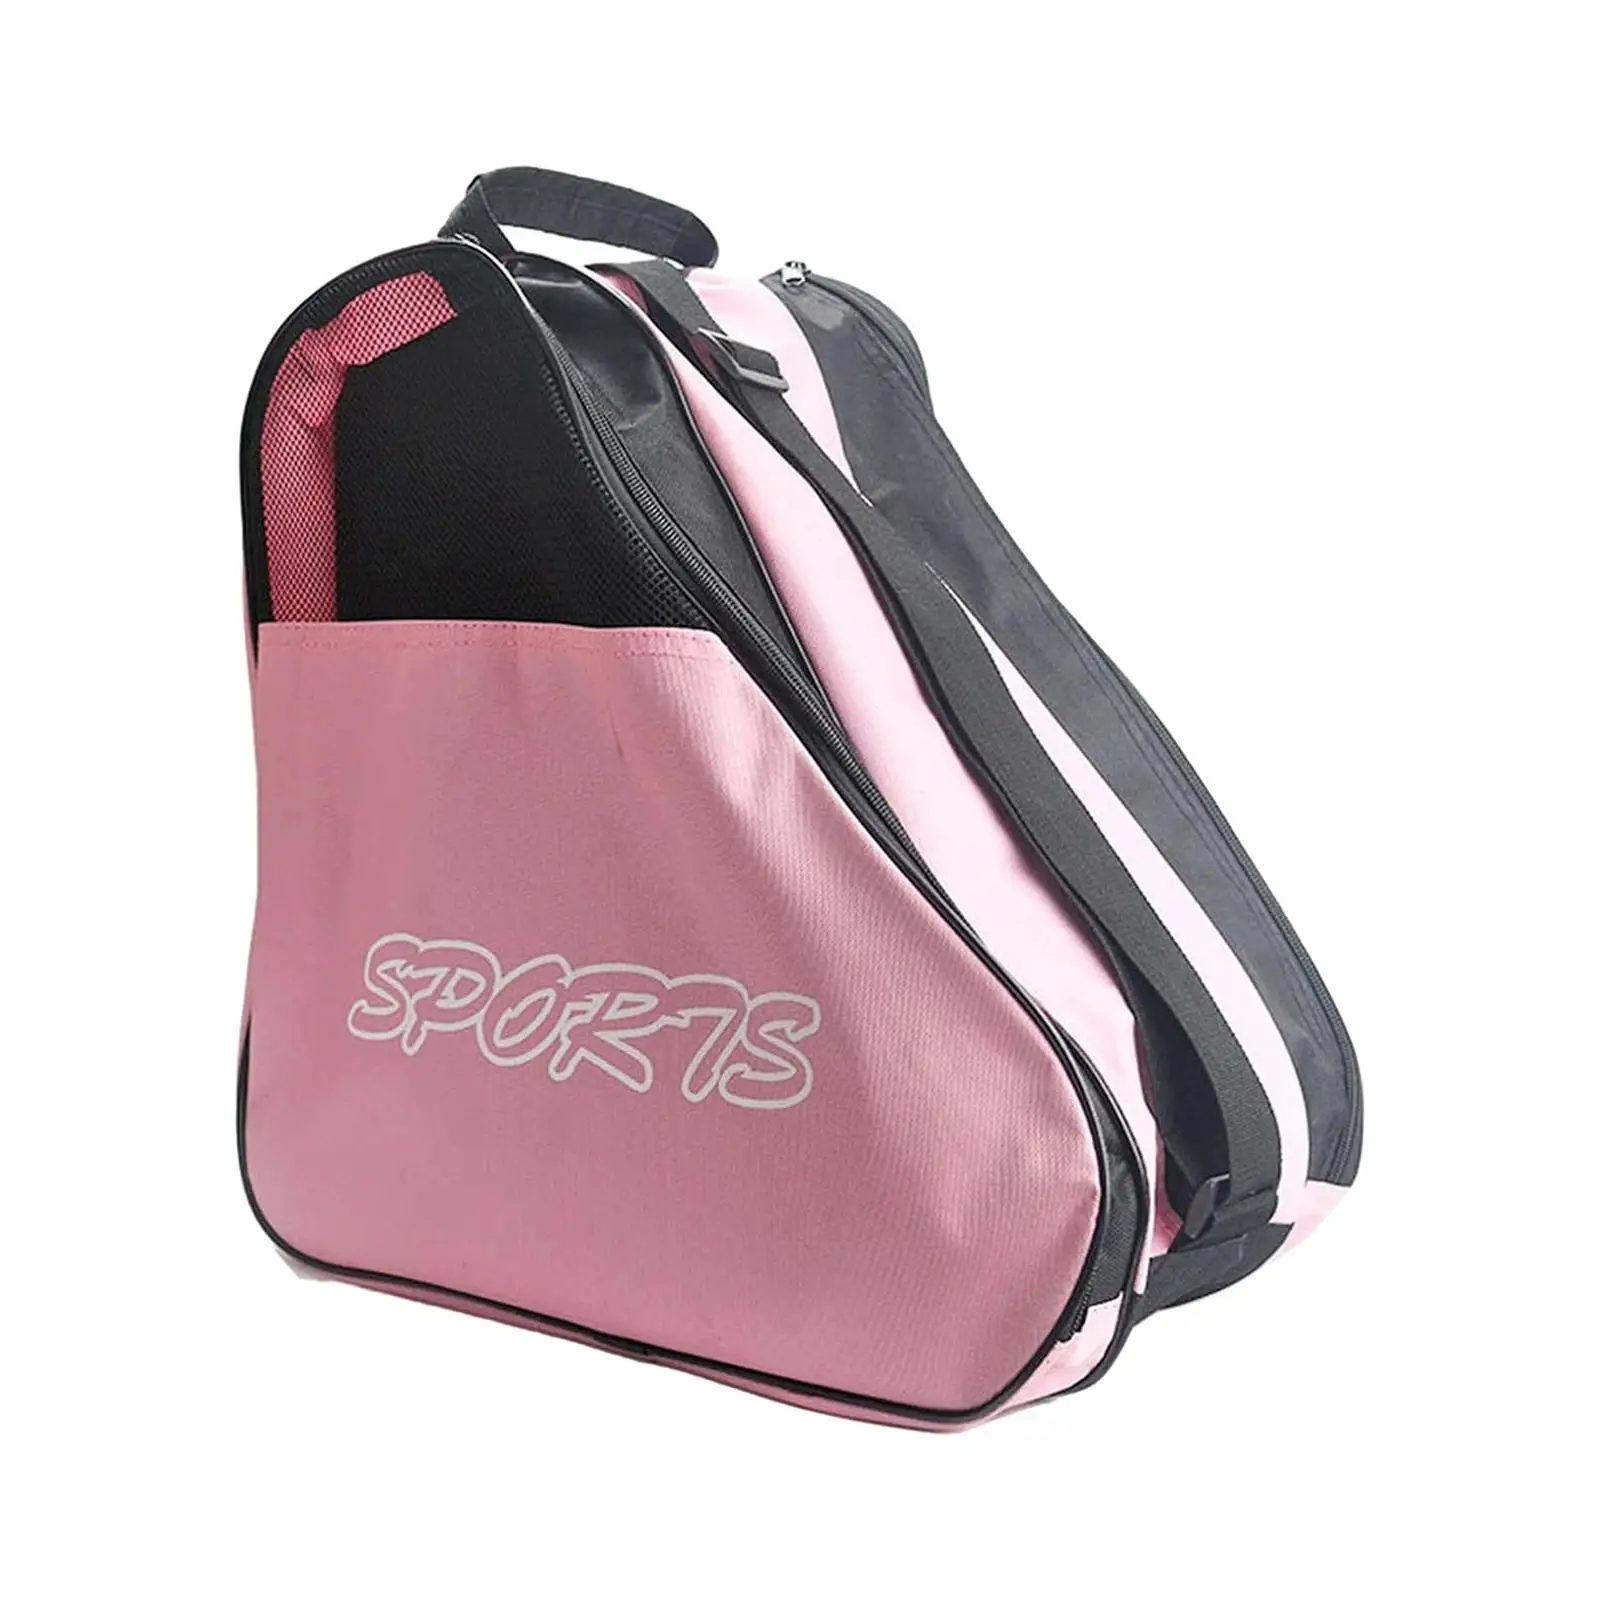 Roller Skates Bag Kids Inline Skates Bag Adjustable Shoulder Strap Portable Ice Skating Bag for Teenager Men Girls Boys Women